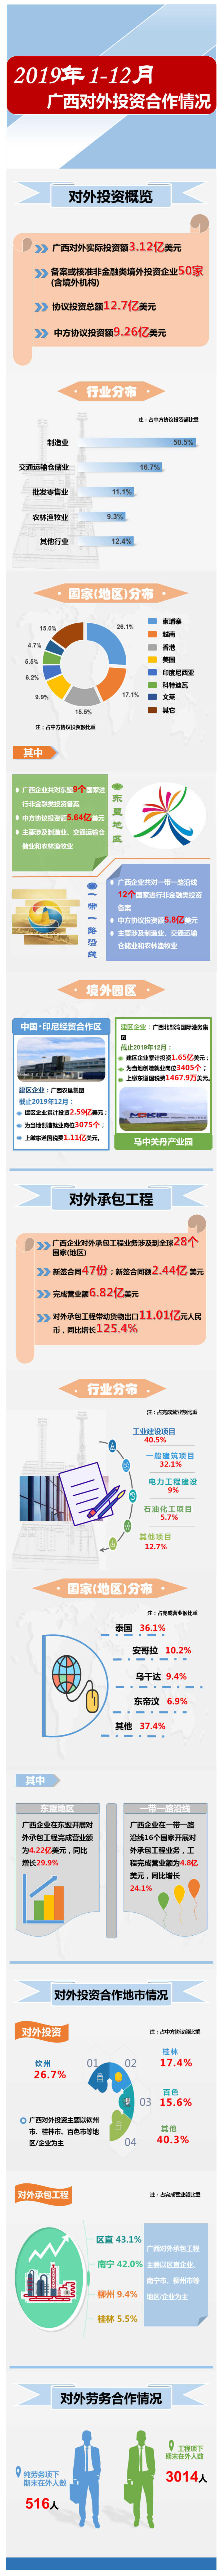 图解：2019年1-12月广西对外投资合作情况 - 对外合作数据 - 广西壮族自治区商务厅网站 -.png